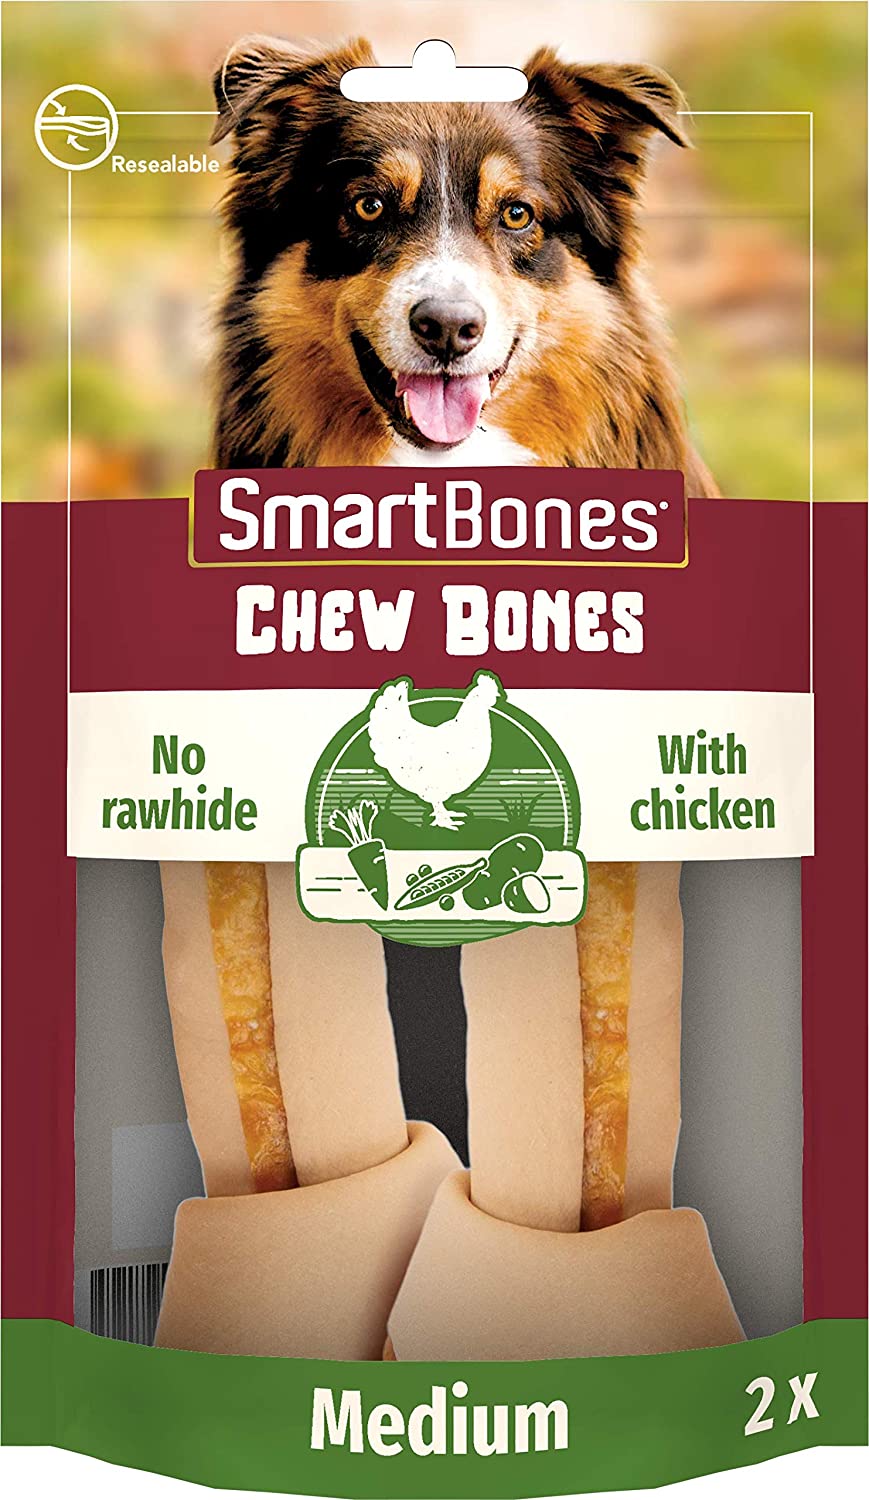 SmartBones - Guloseimas mastigáveis ossos de frango médios